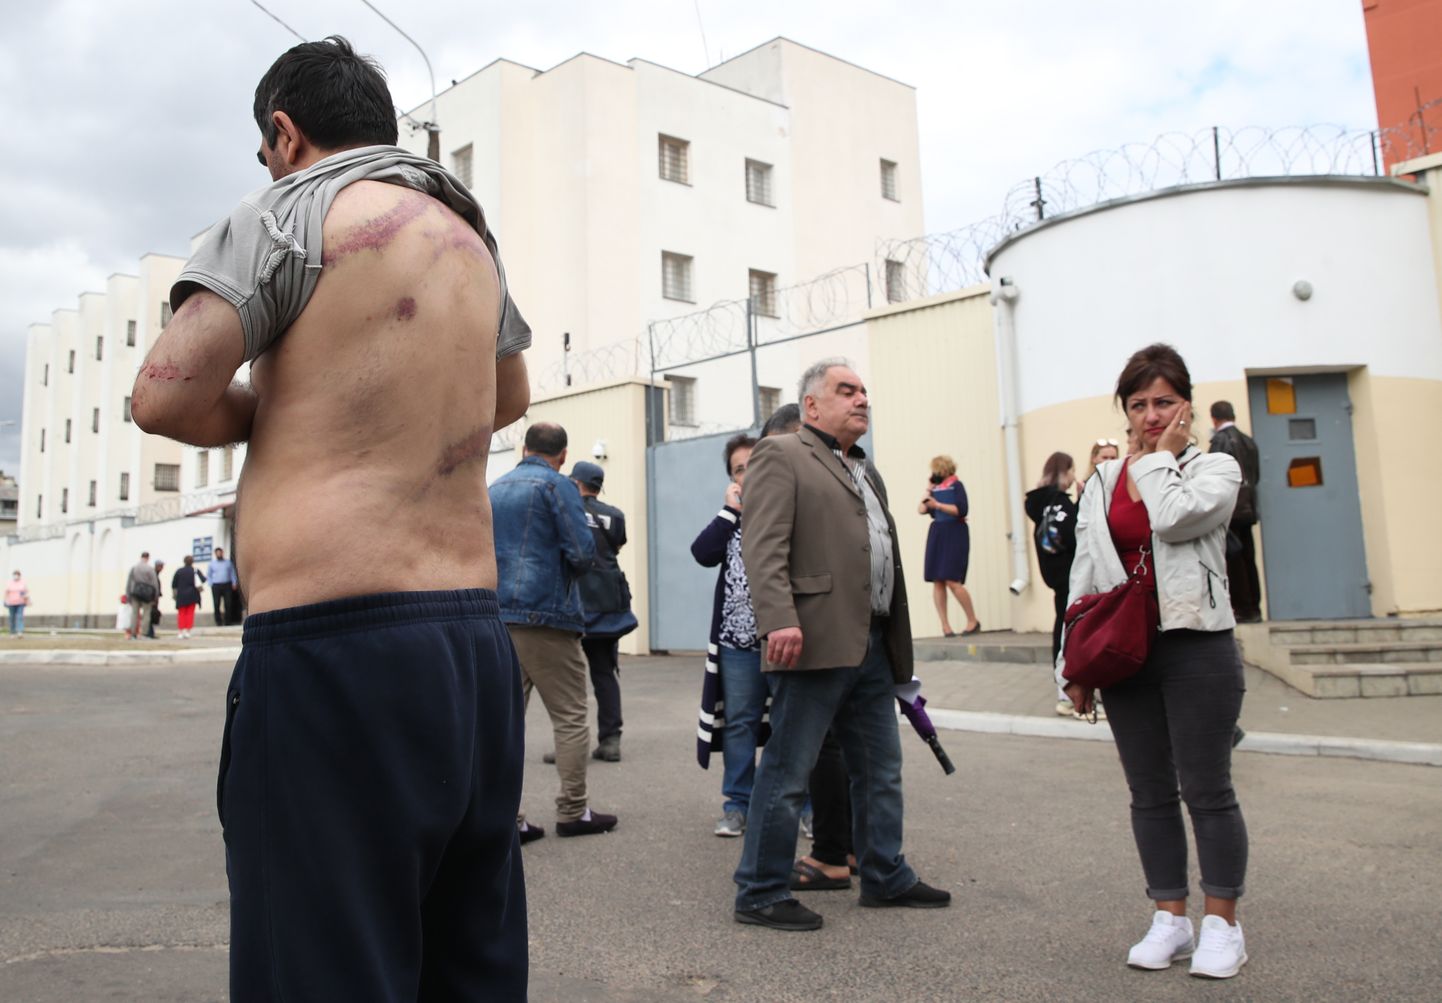 Minskis meeleavalduste ajal vahistatud Vardan Grigrjan tõstab vabadusse pääsemise järel üles oma särgi ning näitab jälgi peksmisest.